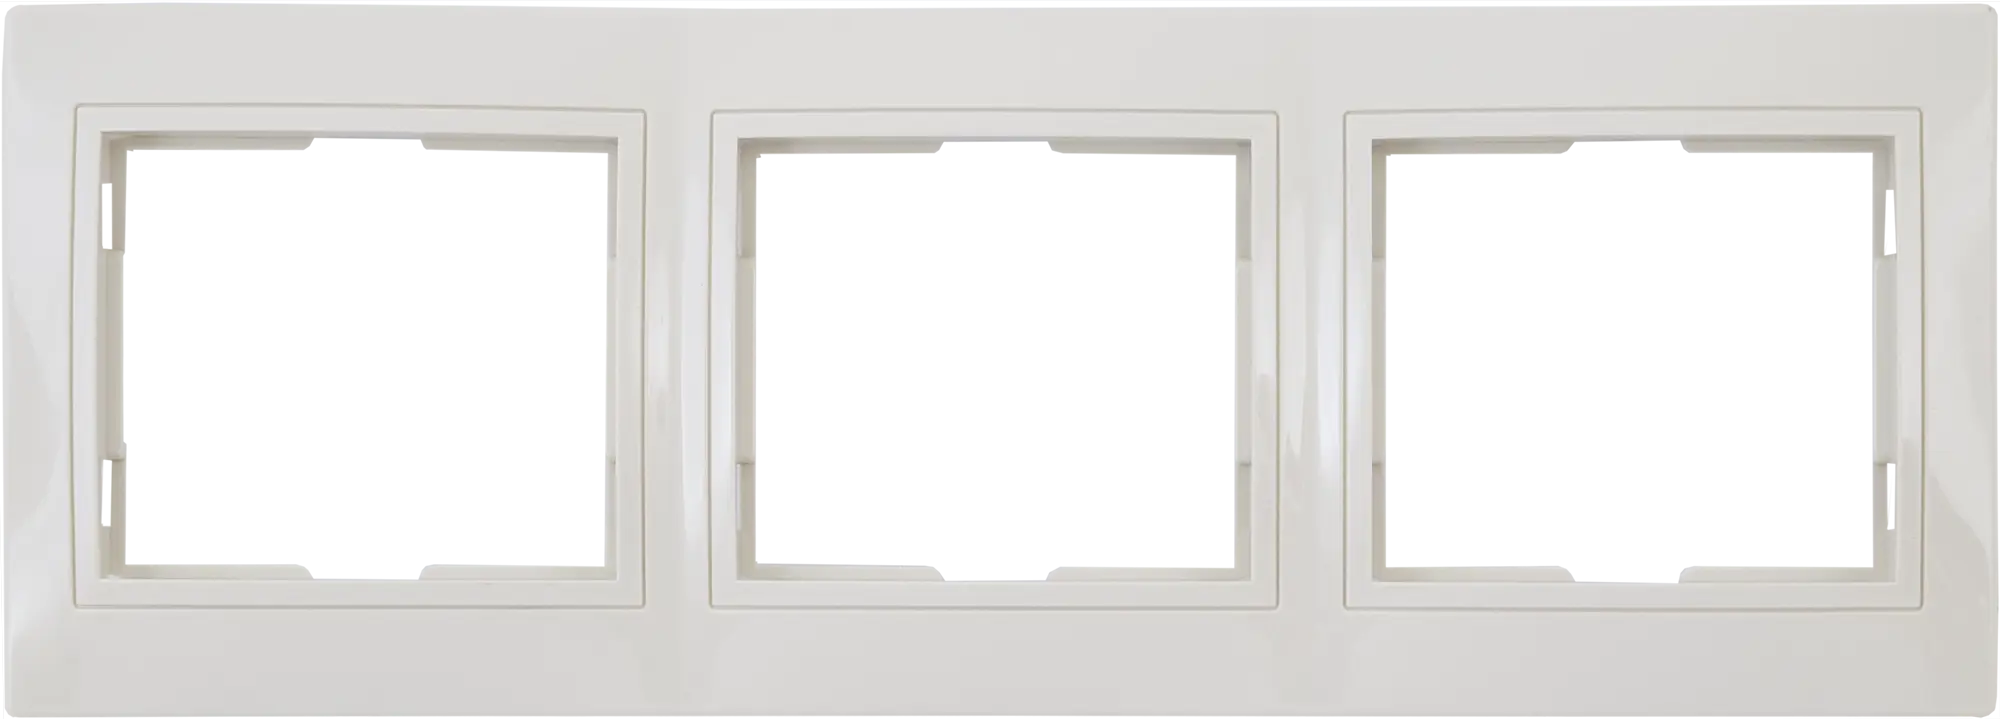 рамка 5 постовая горизонтальная белая таймыр tdm sq1814 0033 Рамка для розеток и выключателей горизонтальная Таймыр 3 поста, цвет бежевый